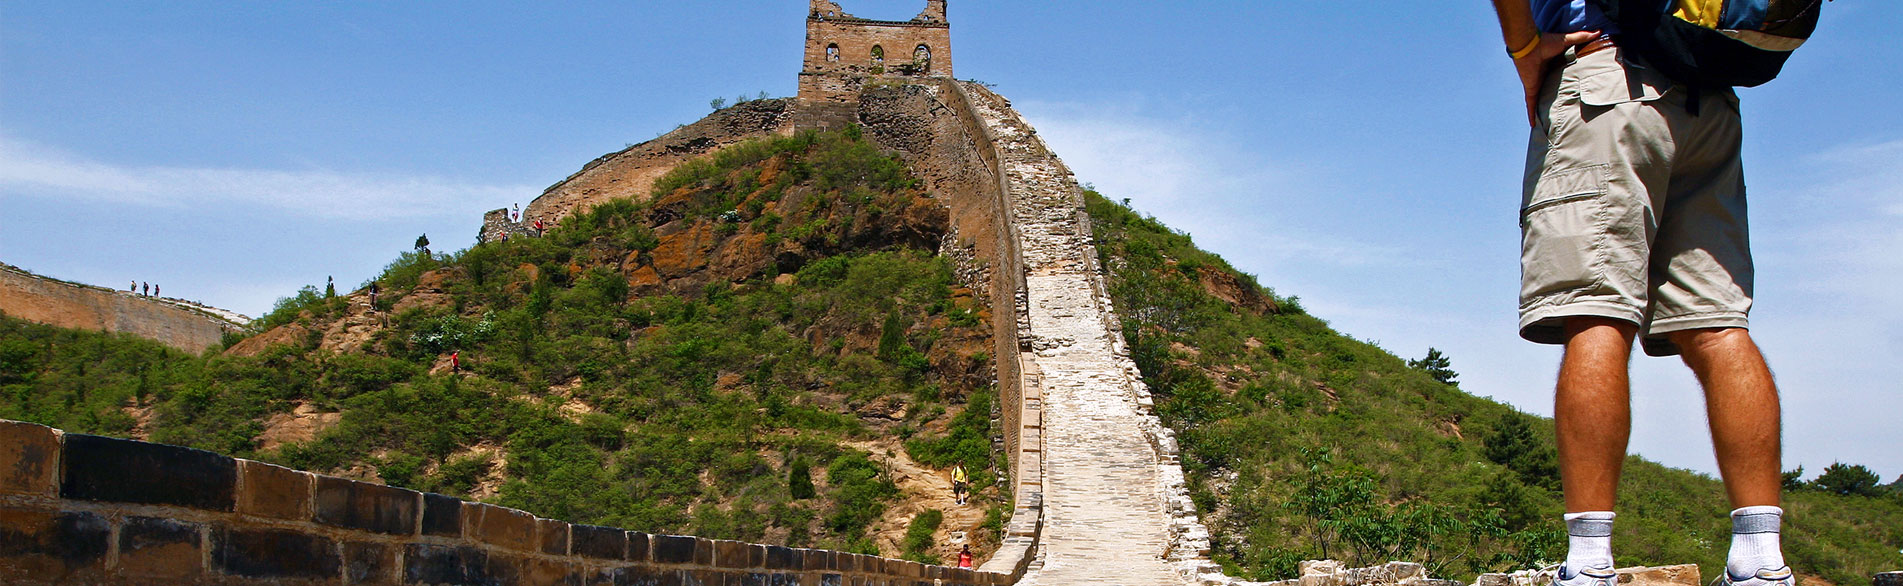 One-Day Jiankou to Mutianyu Great Wall Hiking Tour